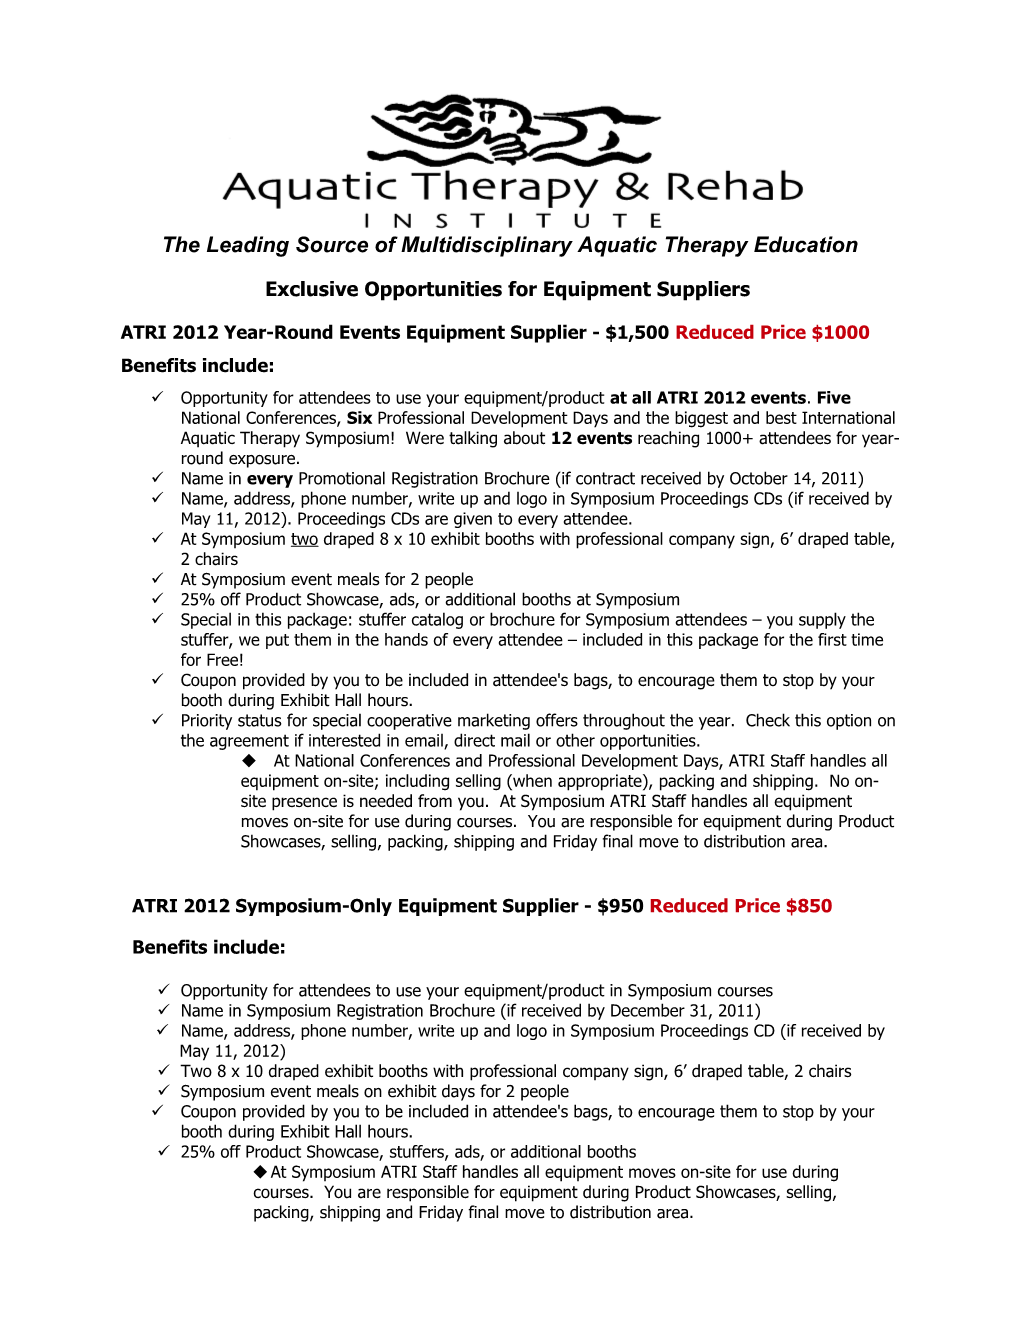 Aquatic Therapy & Rehab Institute, Inc